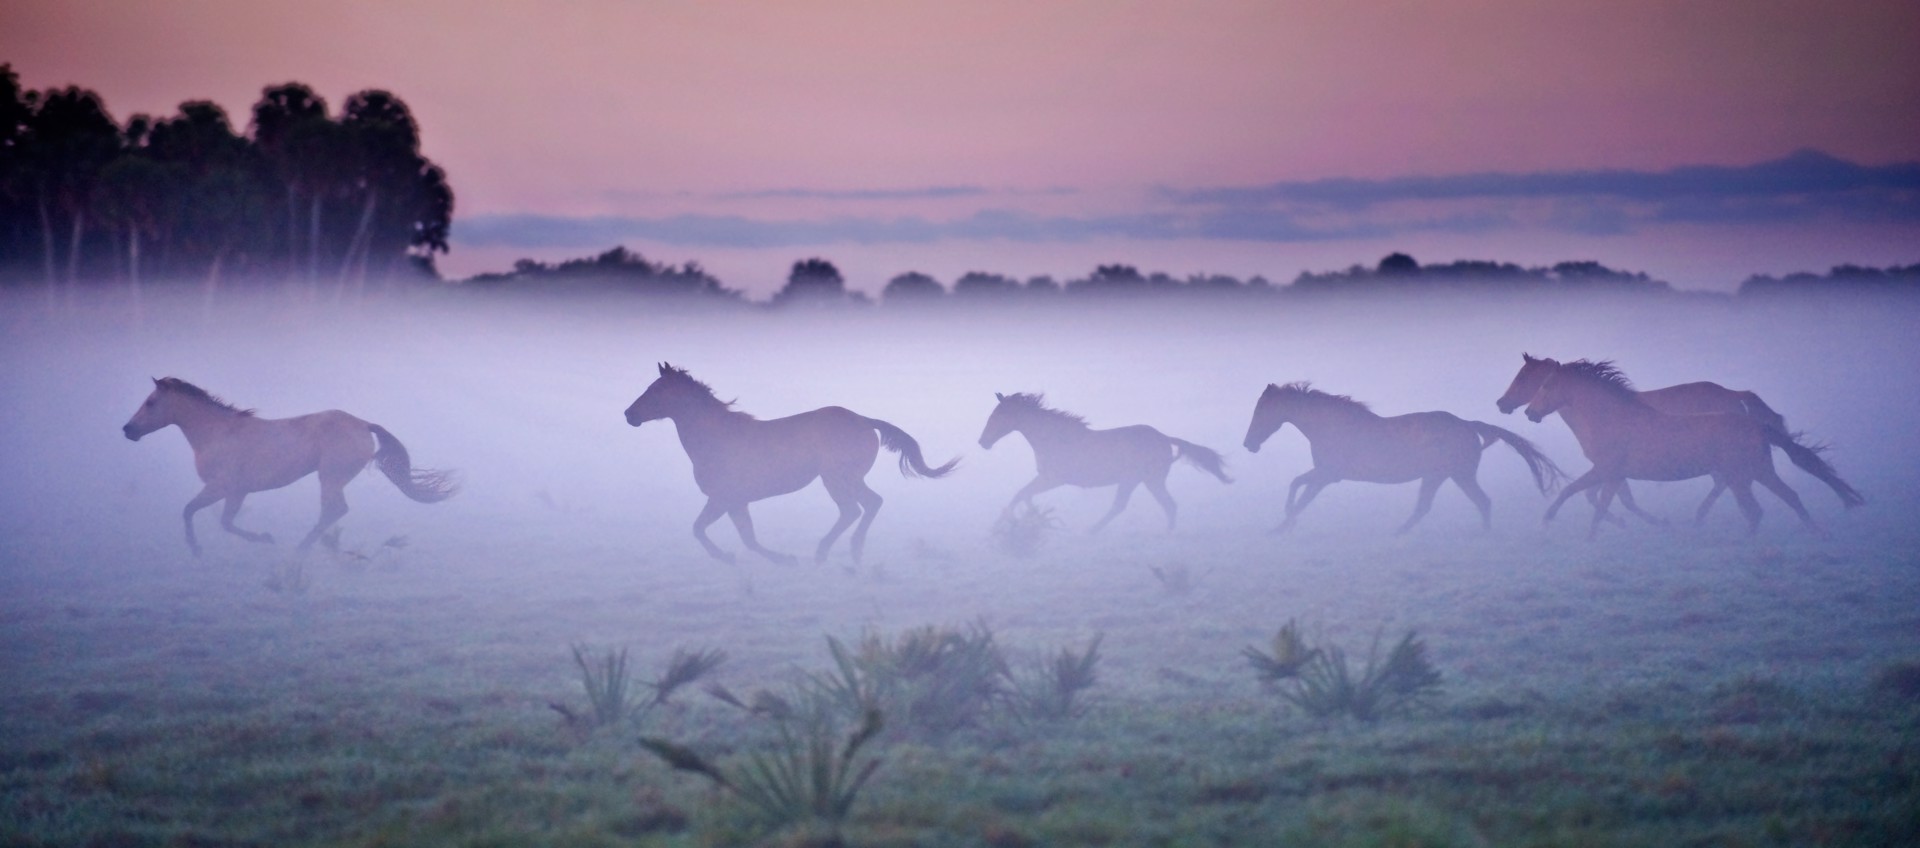 Galloping Horses, Seminole Ranch by Carlton Ward Photography